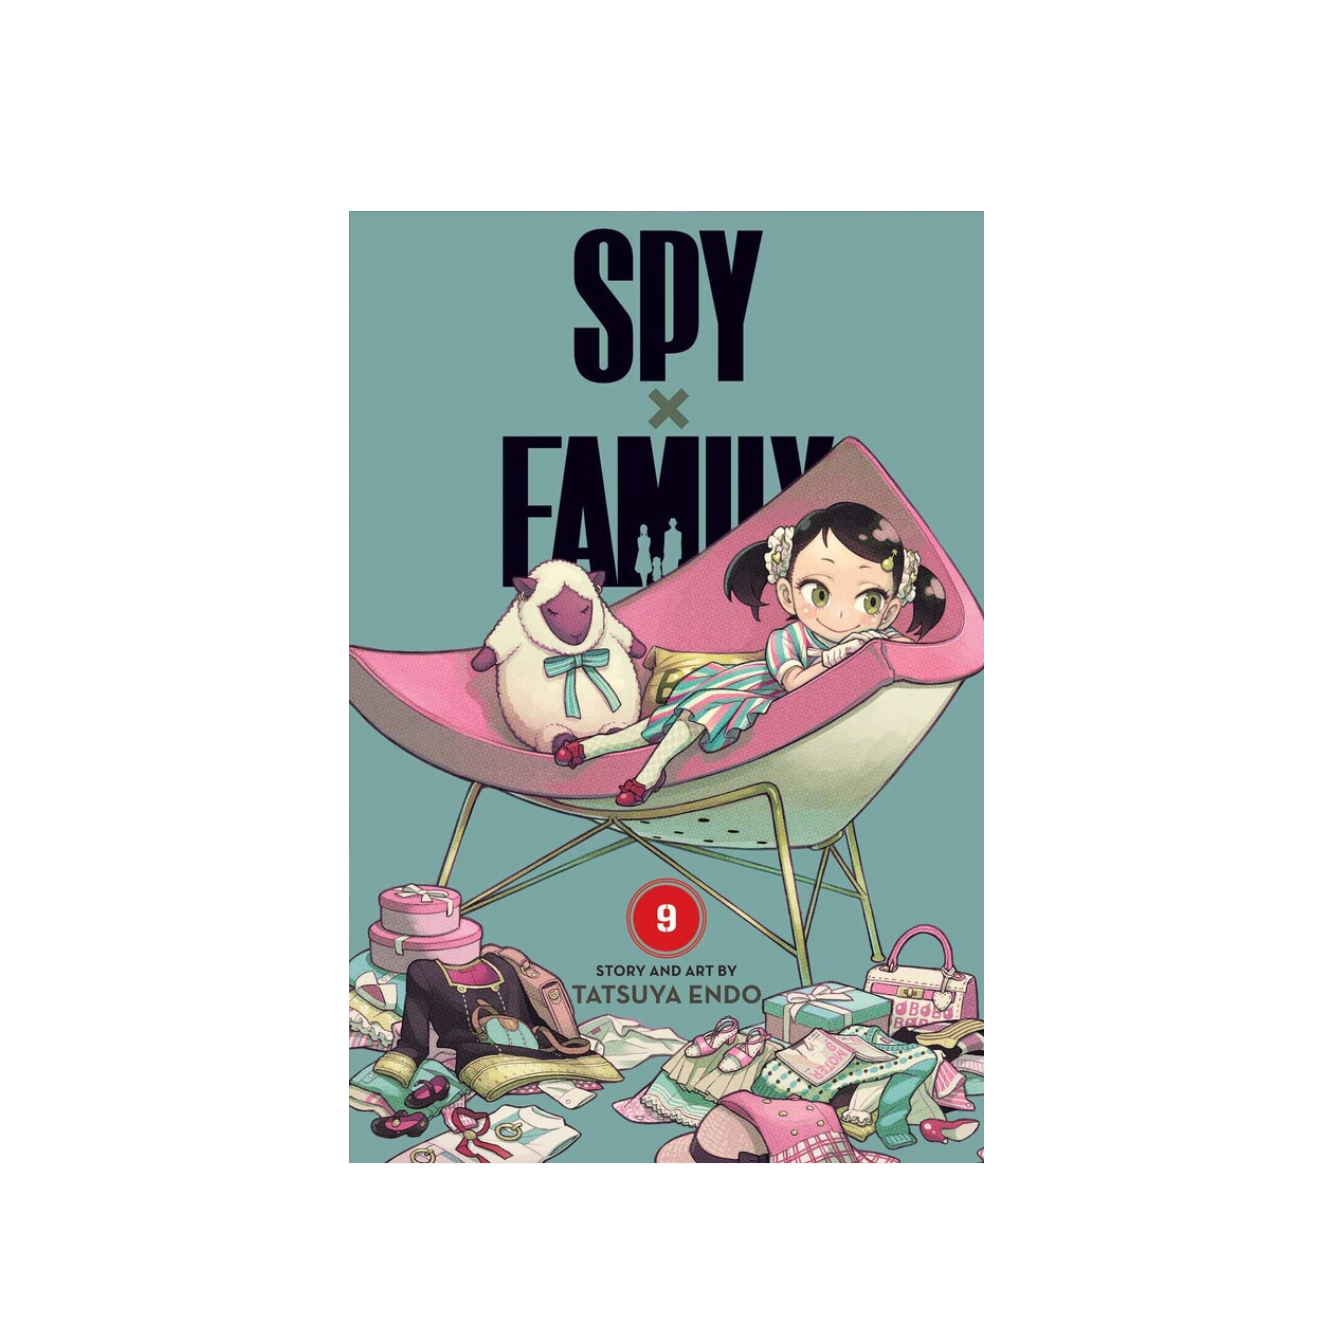 Spy x Family Vol. By Tatsuya Endo Hobbiesville